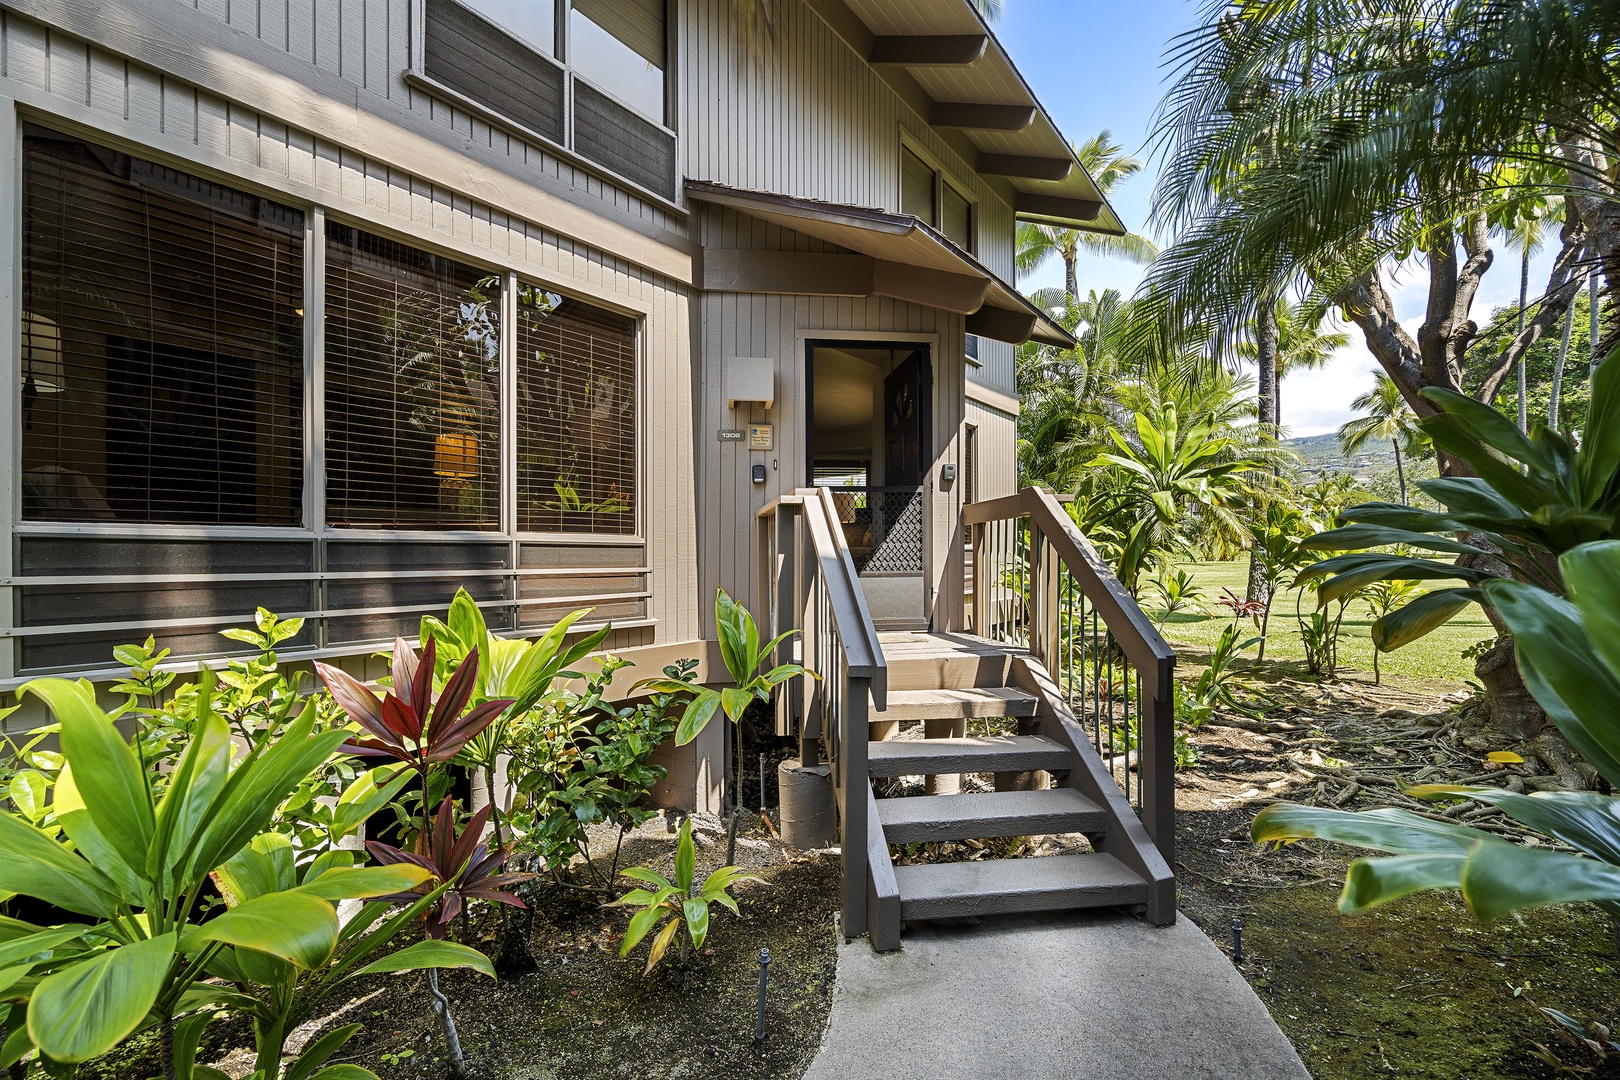 Kailua Kona Vacation Rentals, Kanaloa at Kona 1302 - Front entry with 5 steps leading up